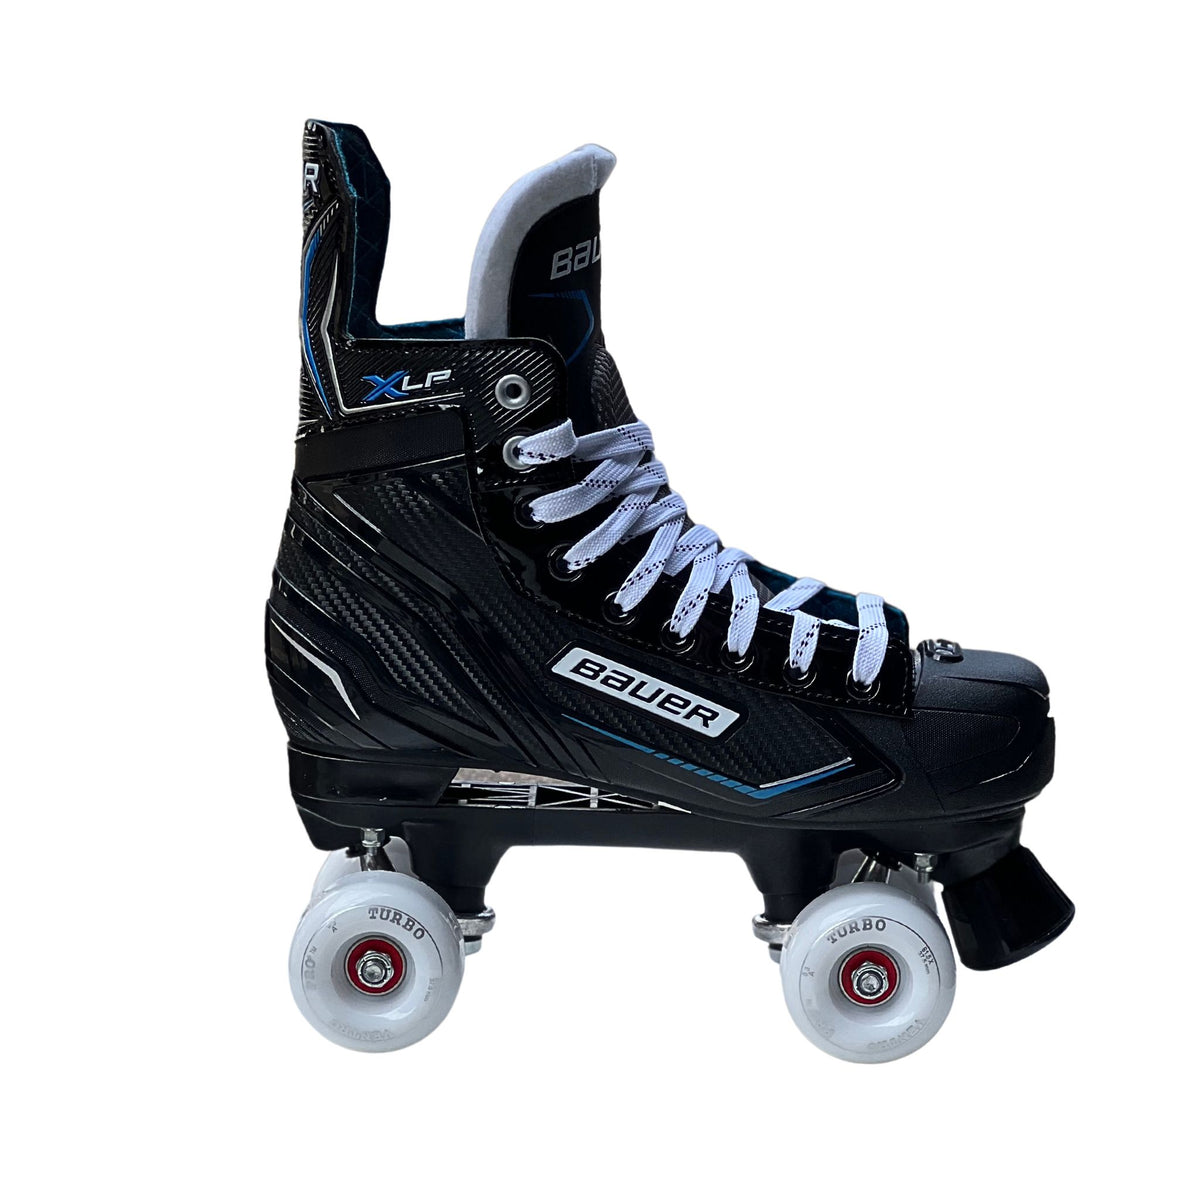 Bauer X-LP Quad Roller Skates with Ventro Wheels - Roller Skates | JT Skate